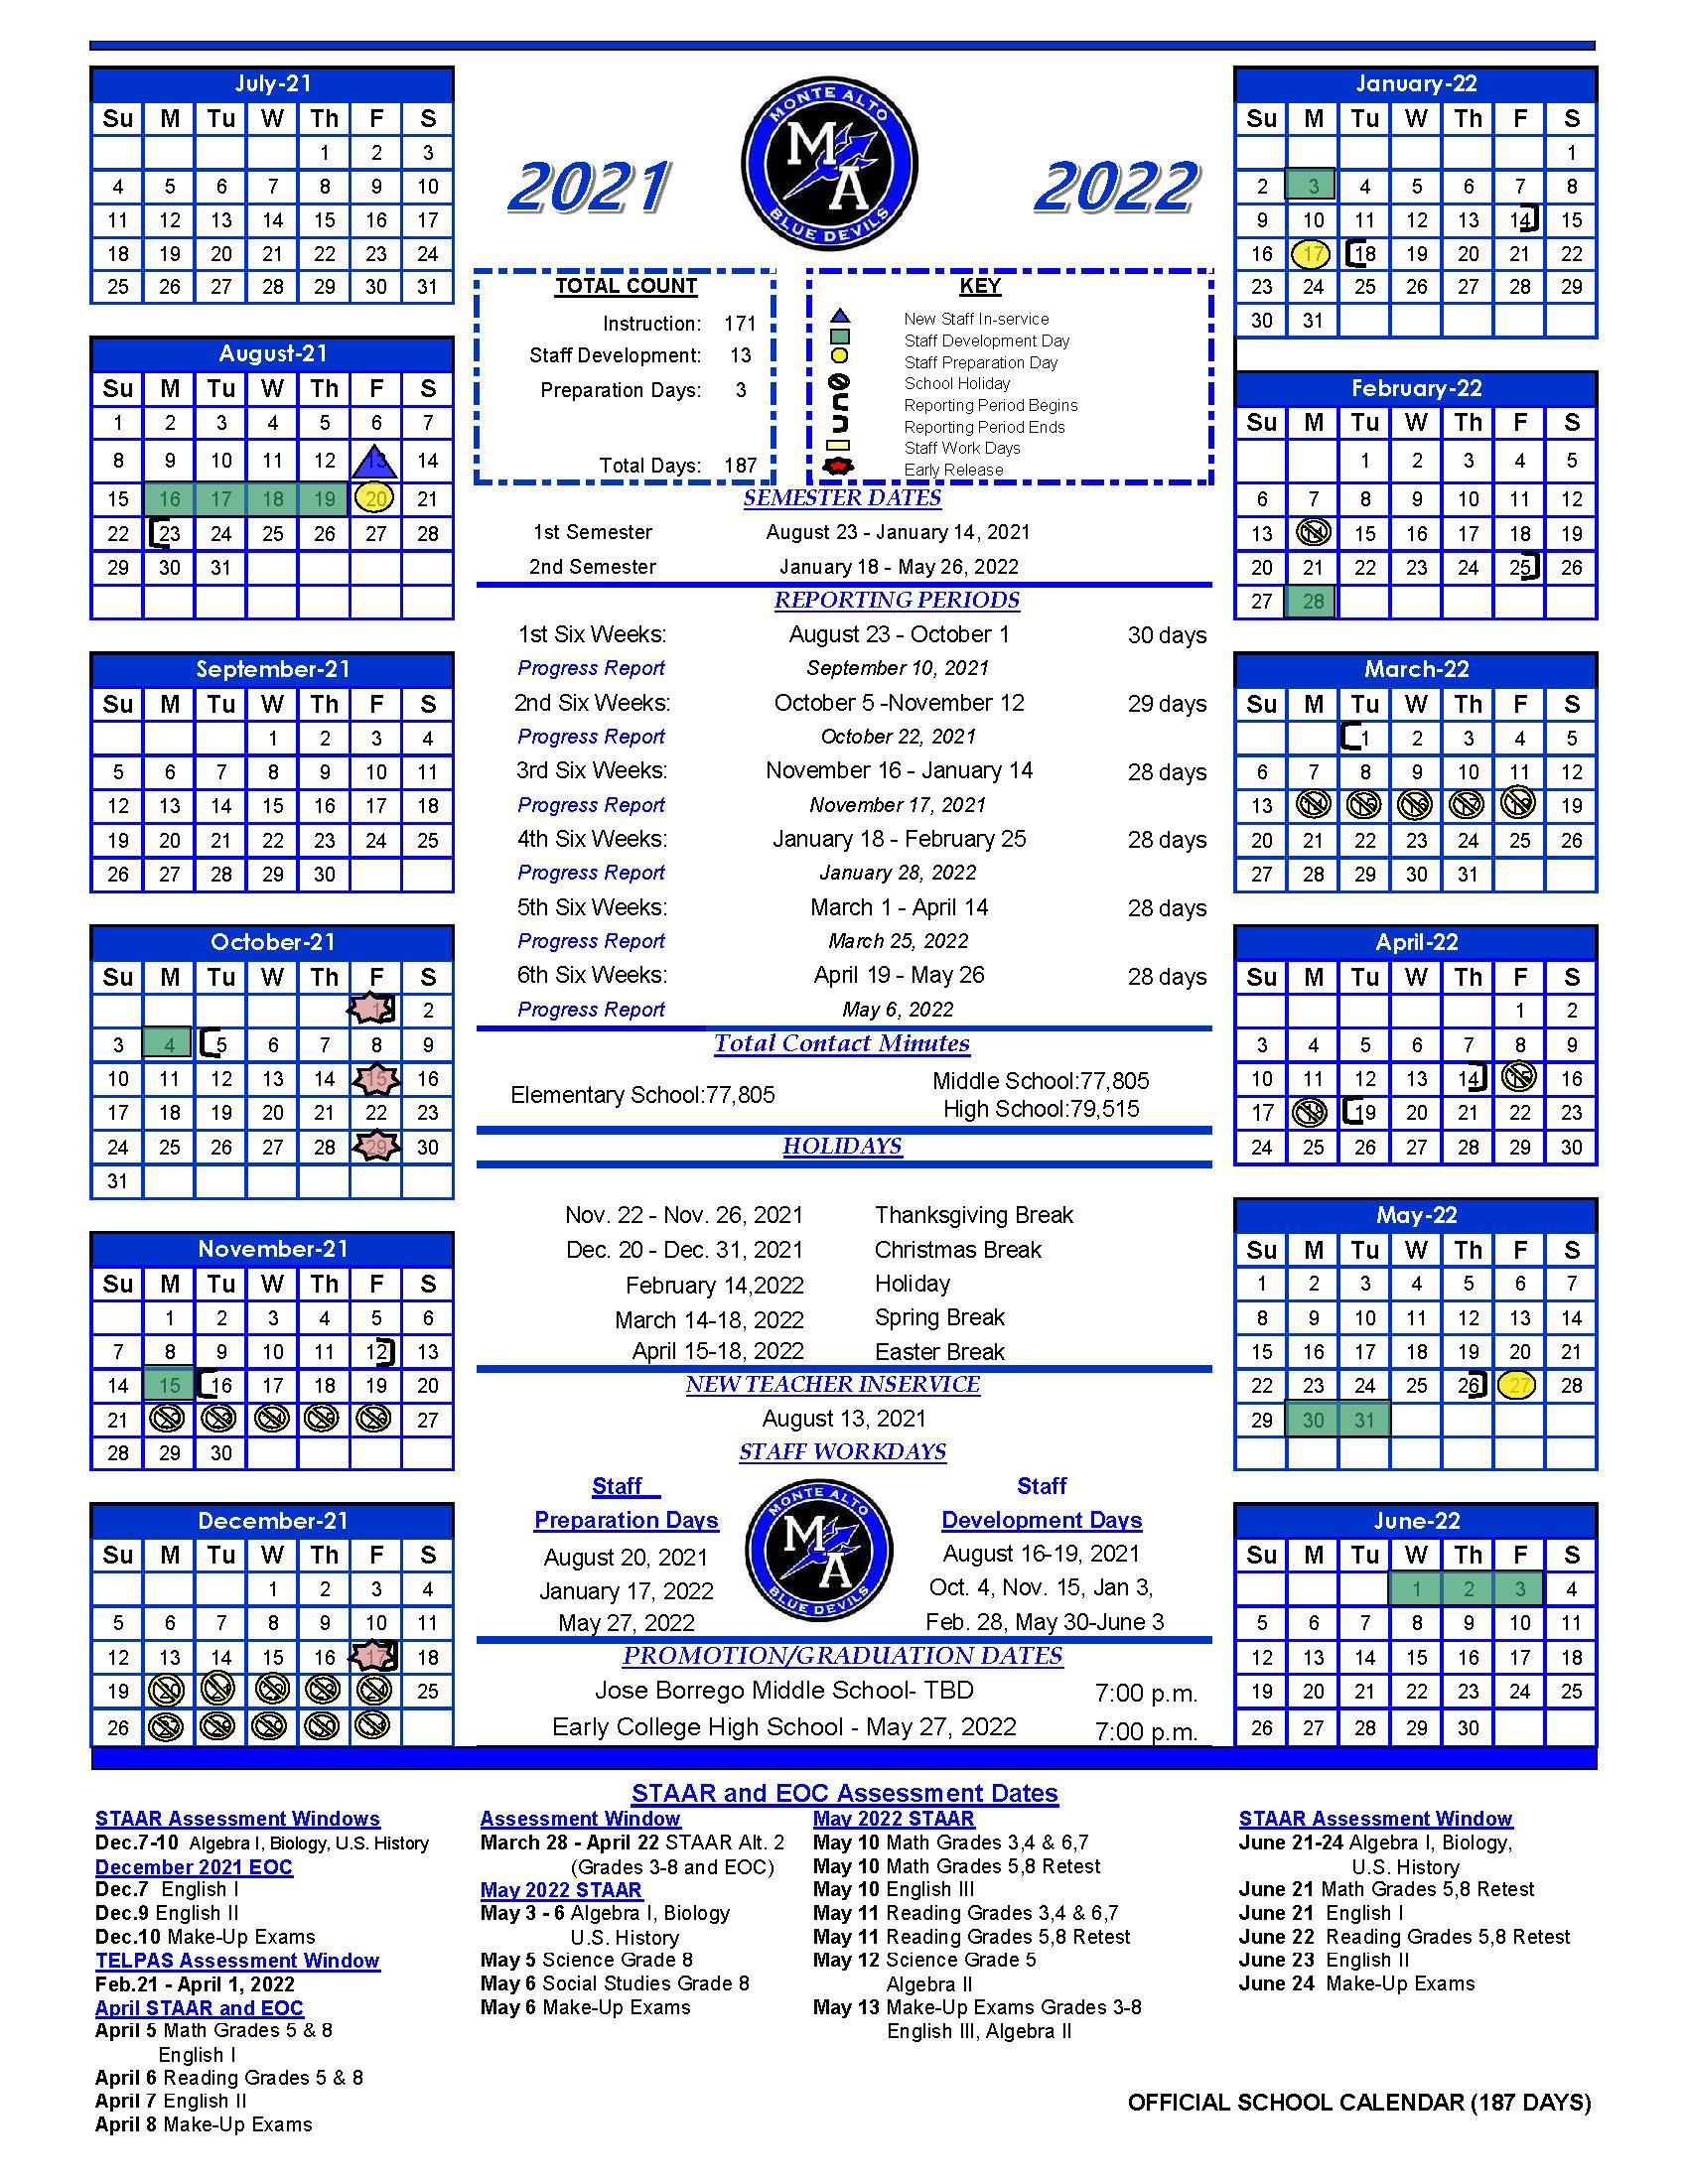 Calendar Monte Alto ISD